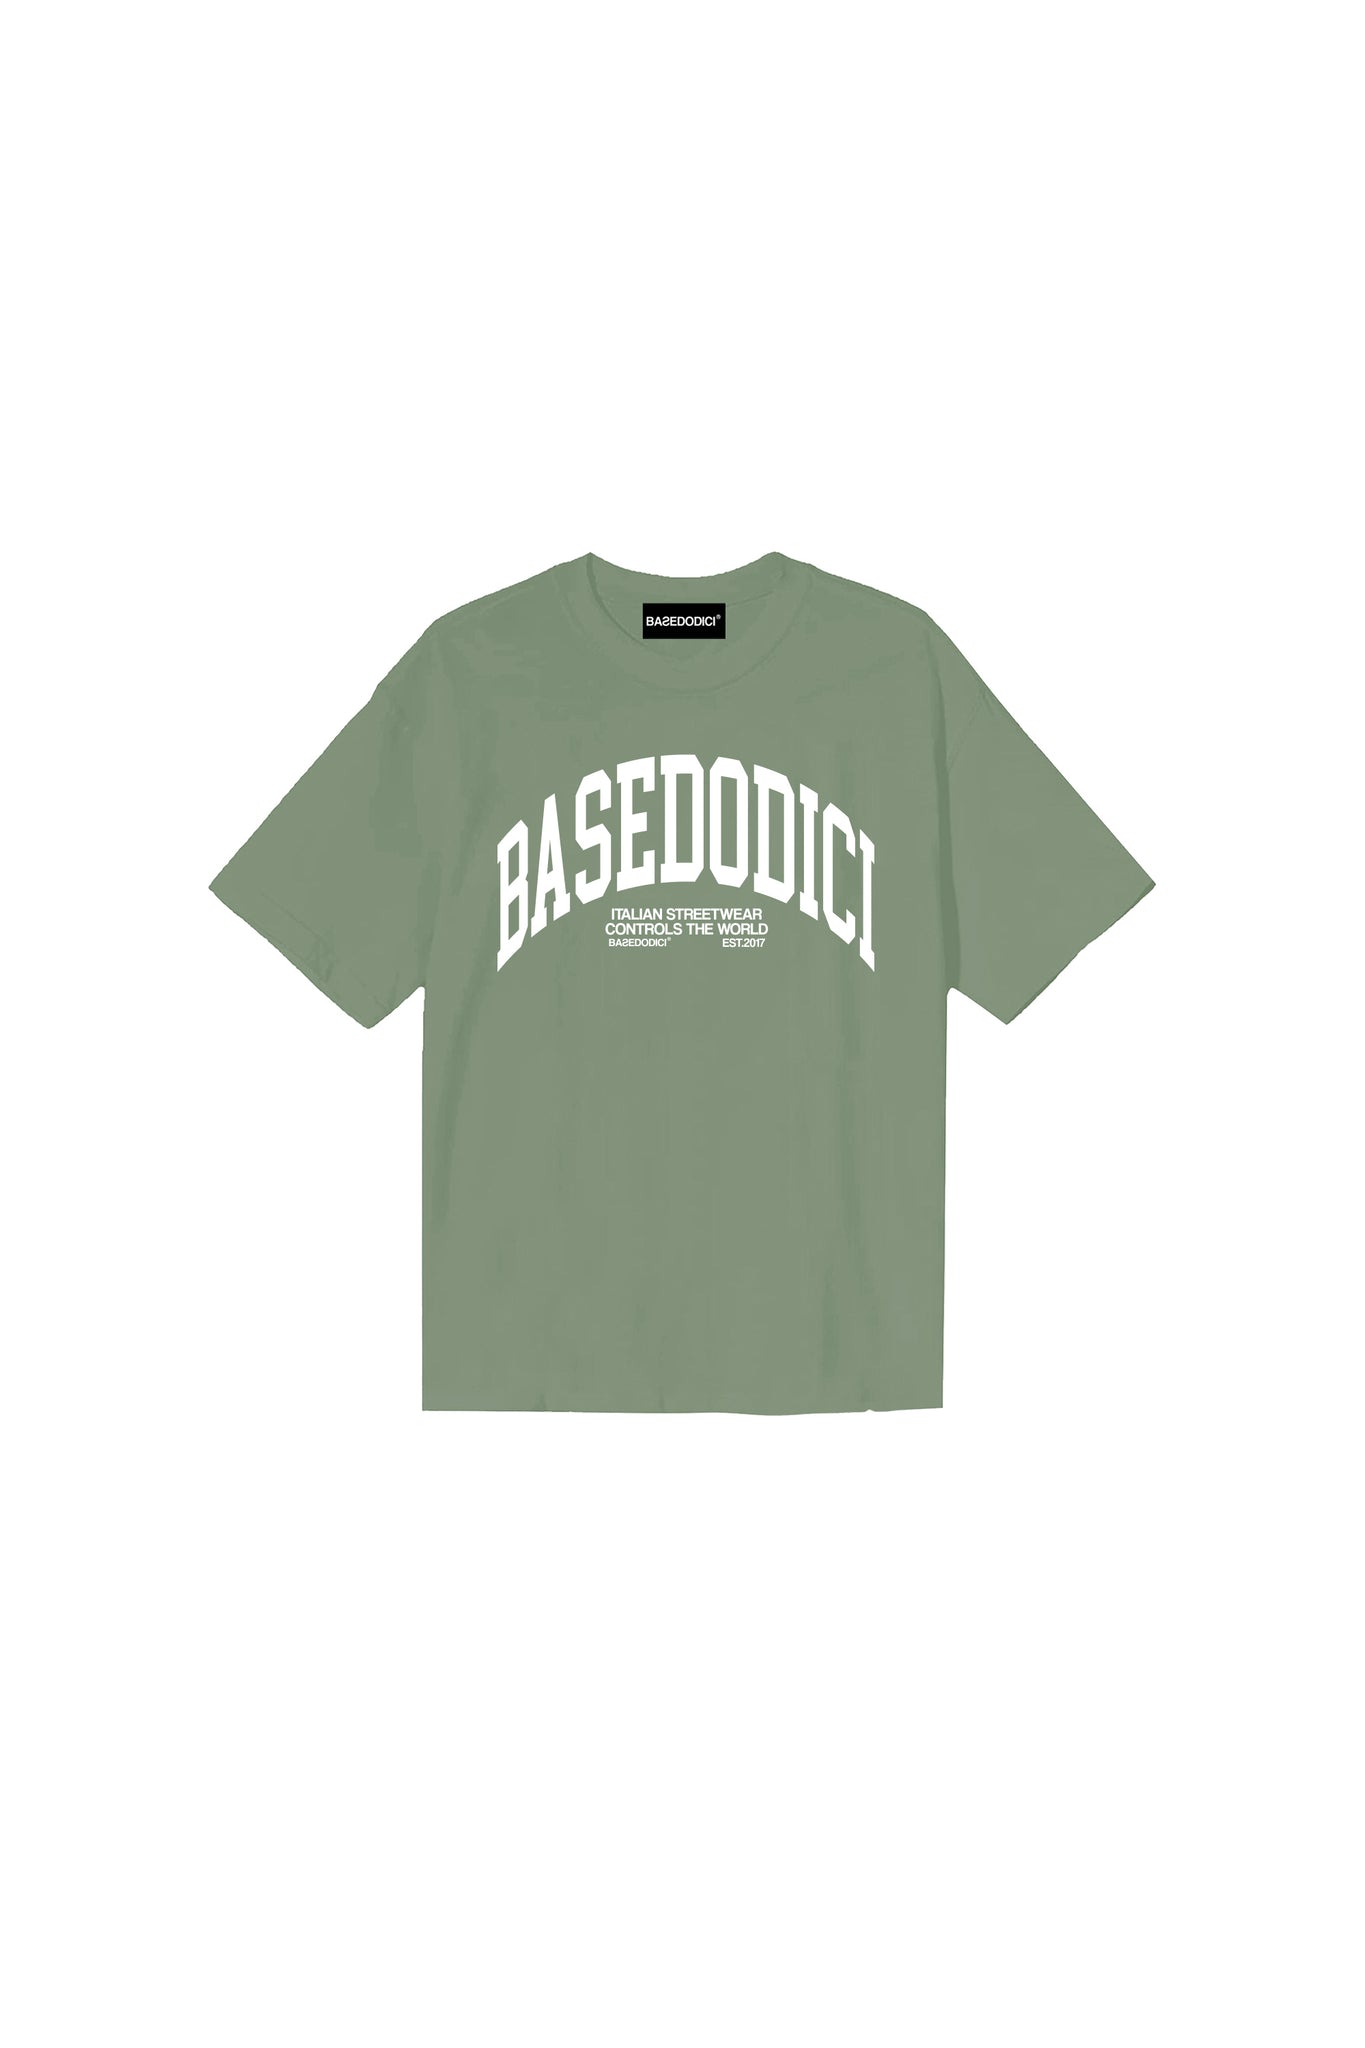 “FORSUMMER” ArcLogo Green T-Shirt